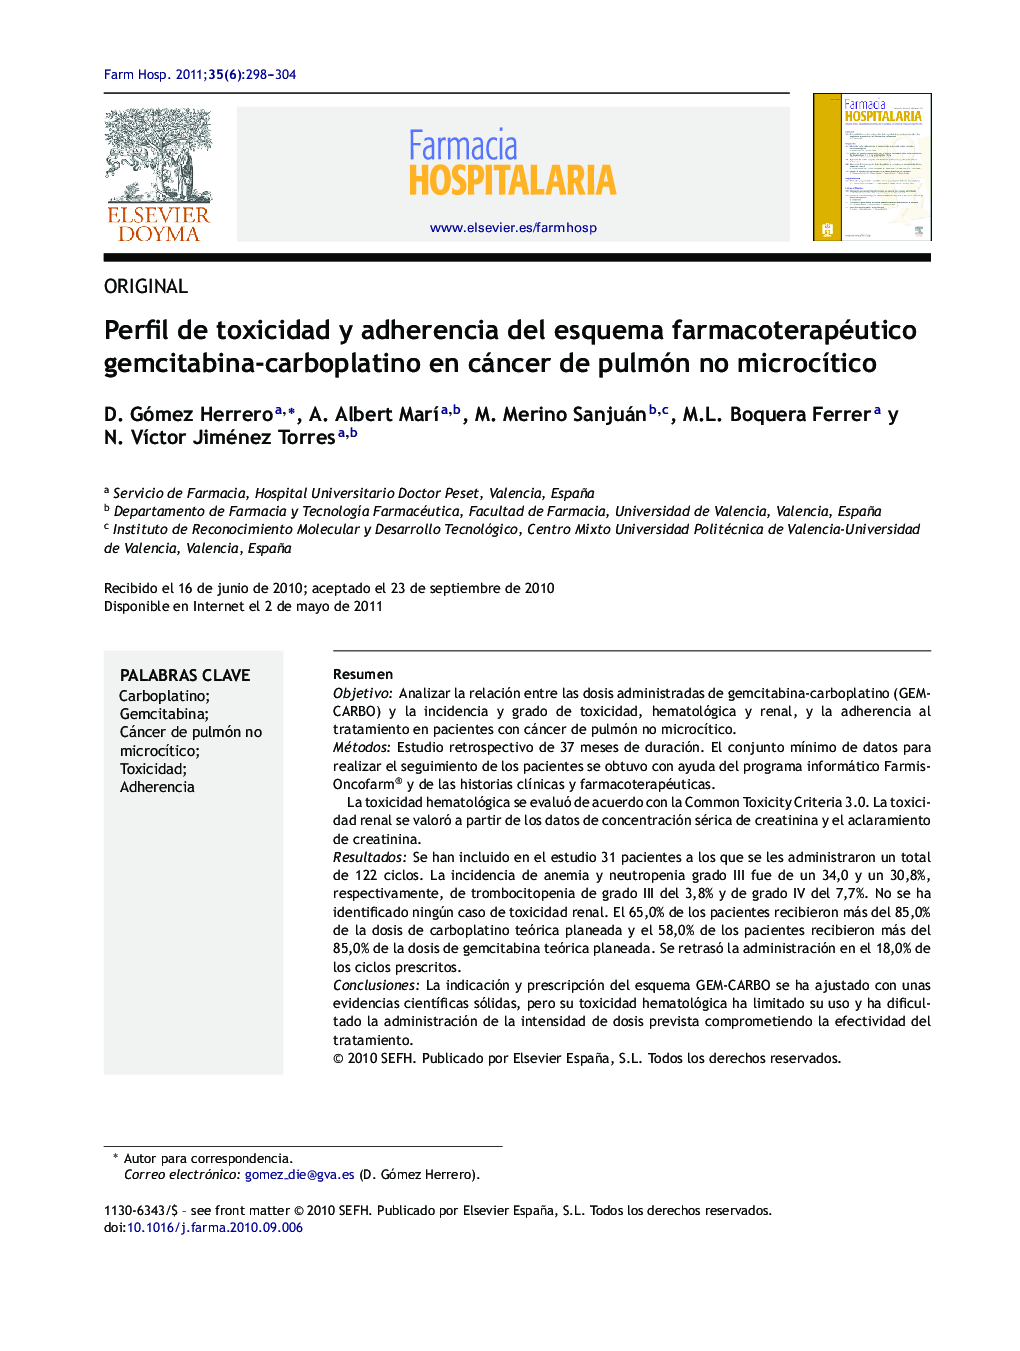 Perfil de toxicidad y adherencia del esquema farmacoterapéutico gemcitabina-carboplatino en cáncer de pulmón no microcÃ­tico